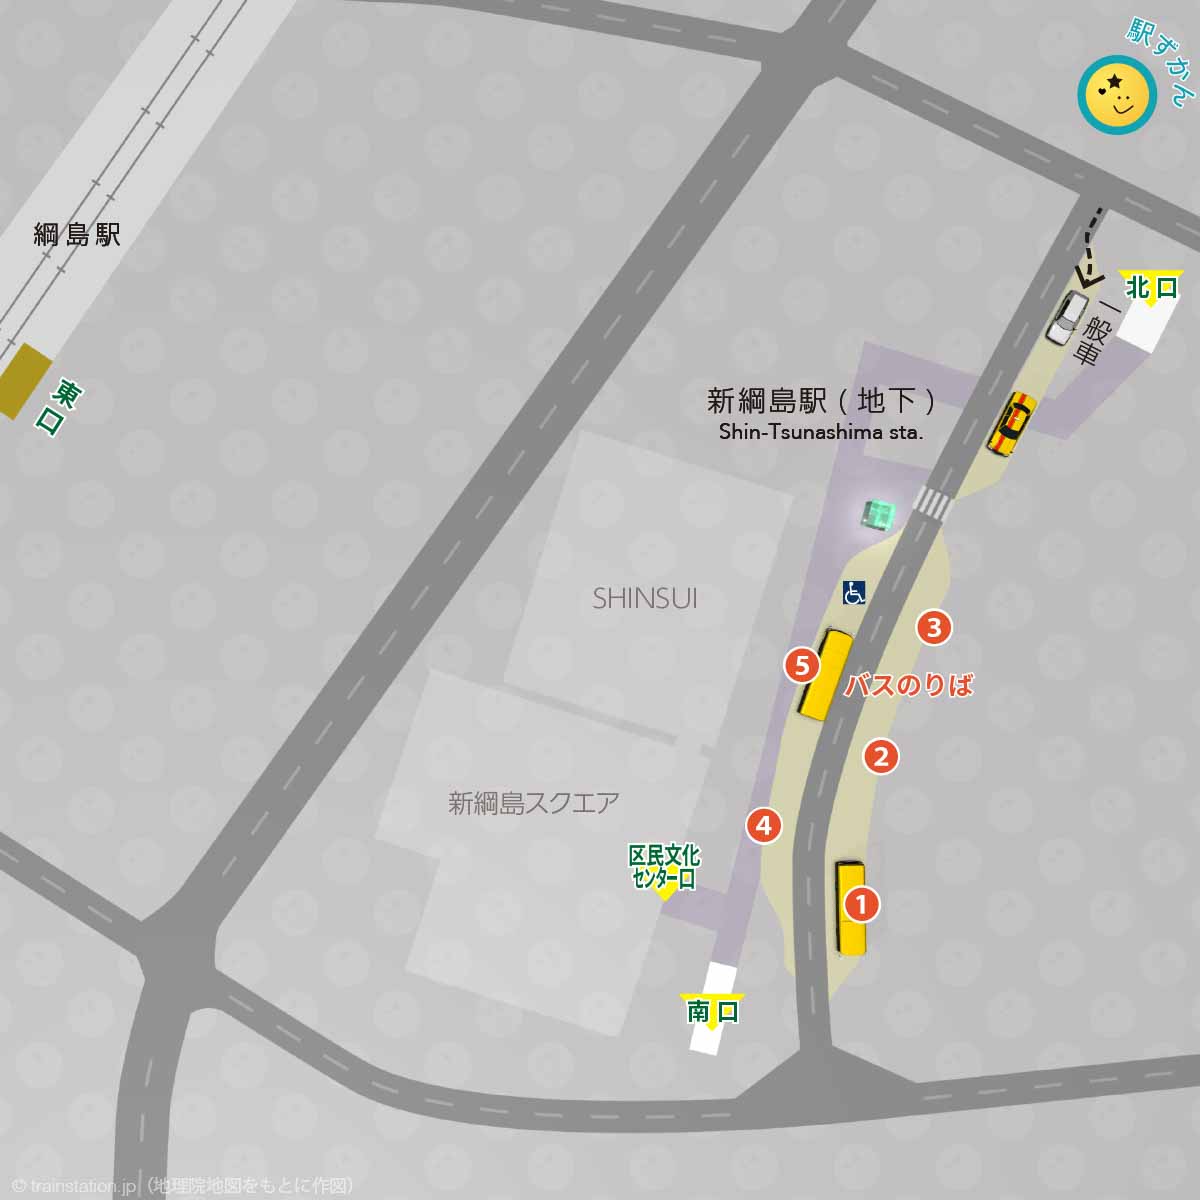 新綱島駅交通広場マップ